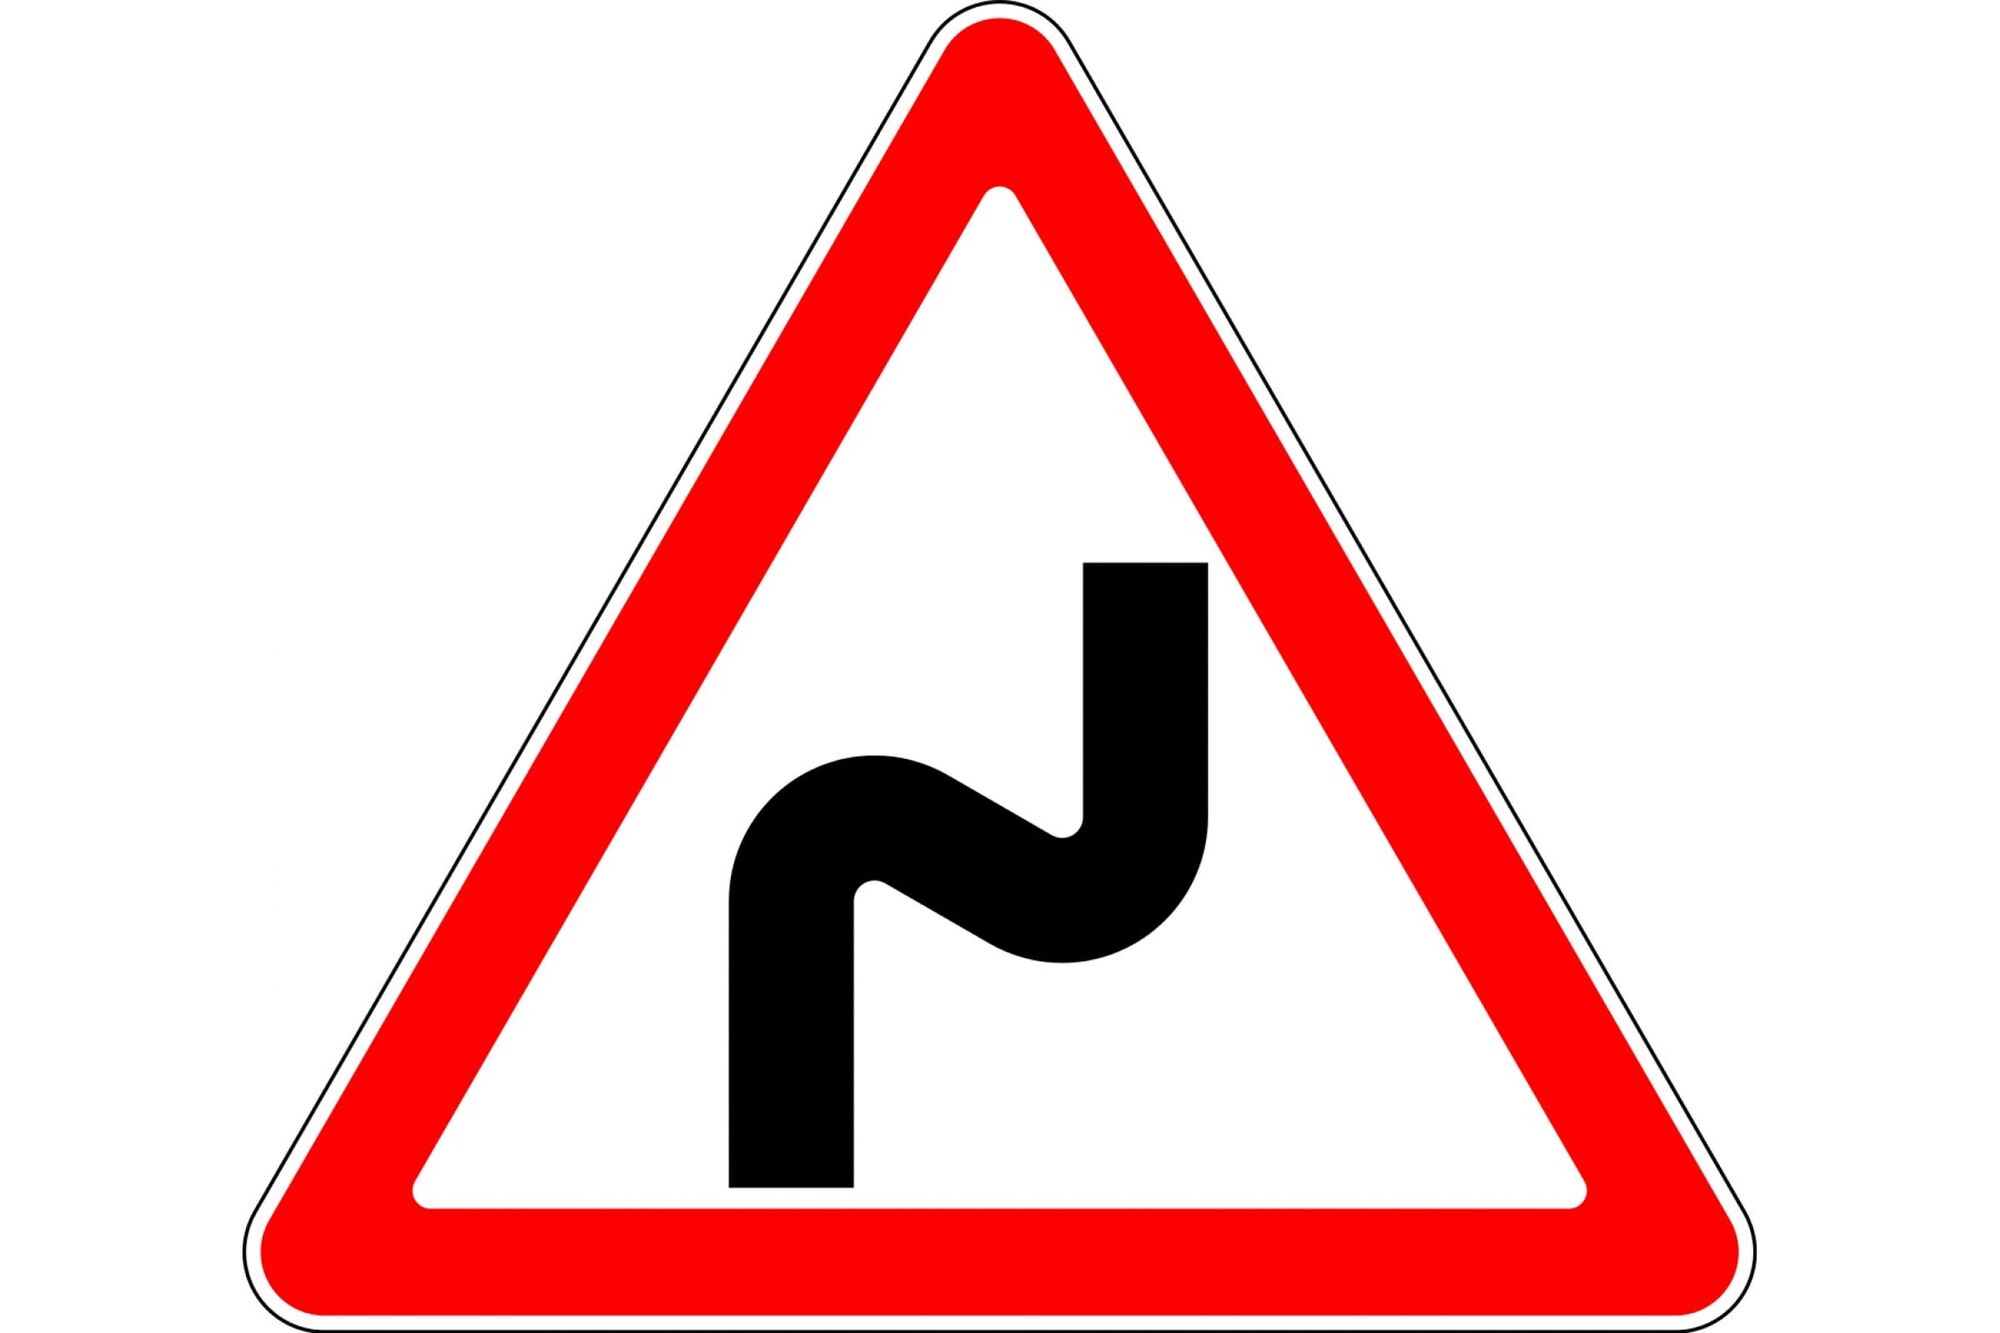 Дорожный знак 12. Знак 1.12.1 опасный поворот. Дорожный знак 1.12.2 опасные повороты. Знак 1.12.2. опасные повороты (с первым поворотом налево). Опасный поворот (дорожные знаки 1.11.1 и 1.11.2).